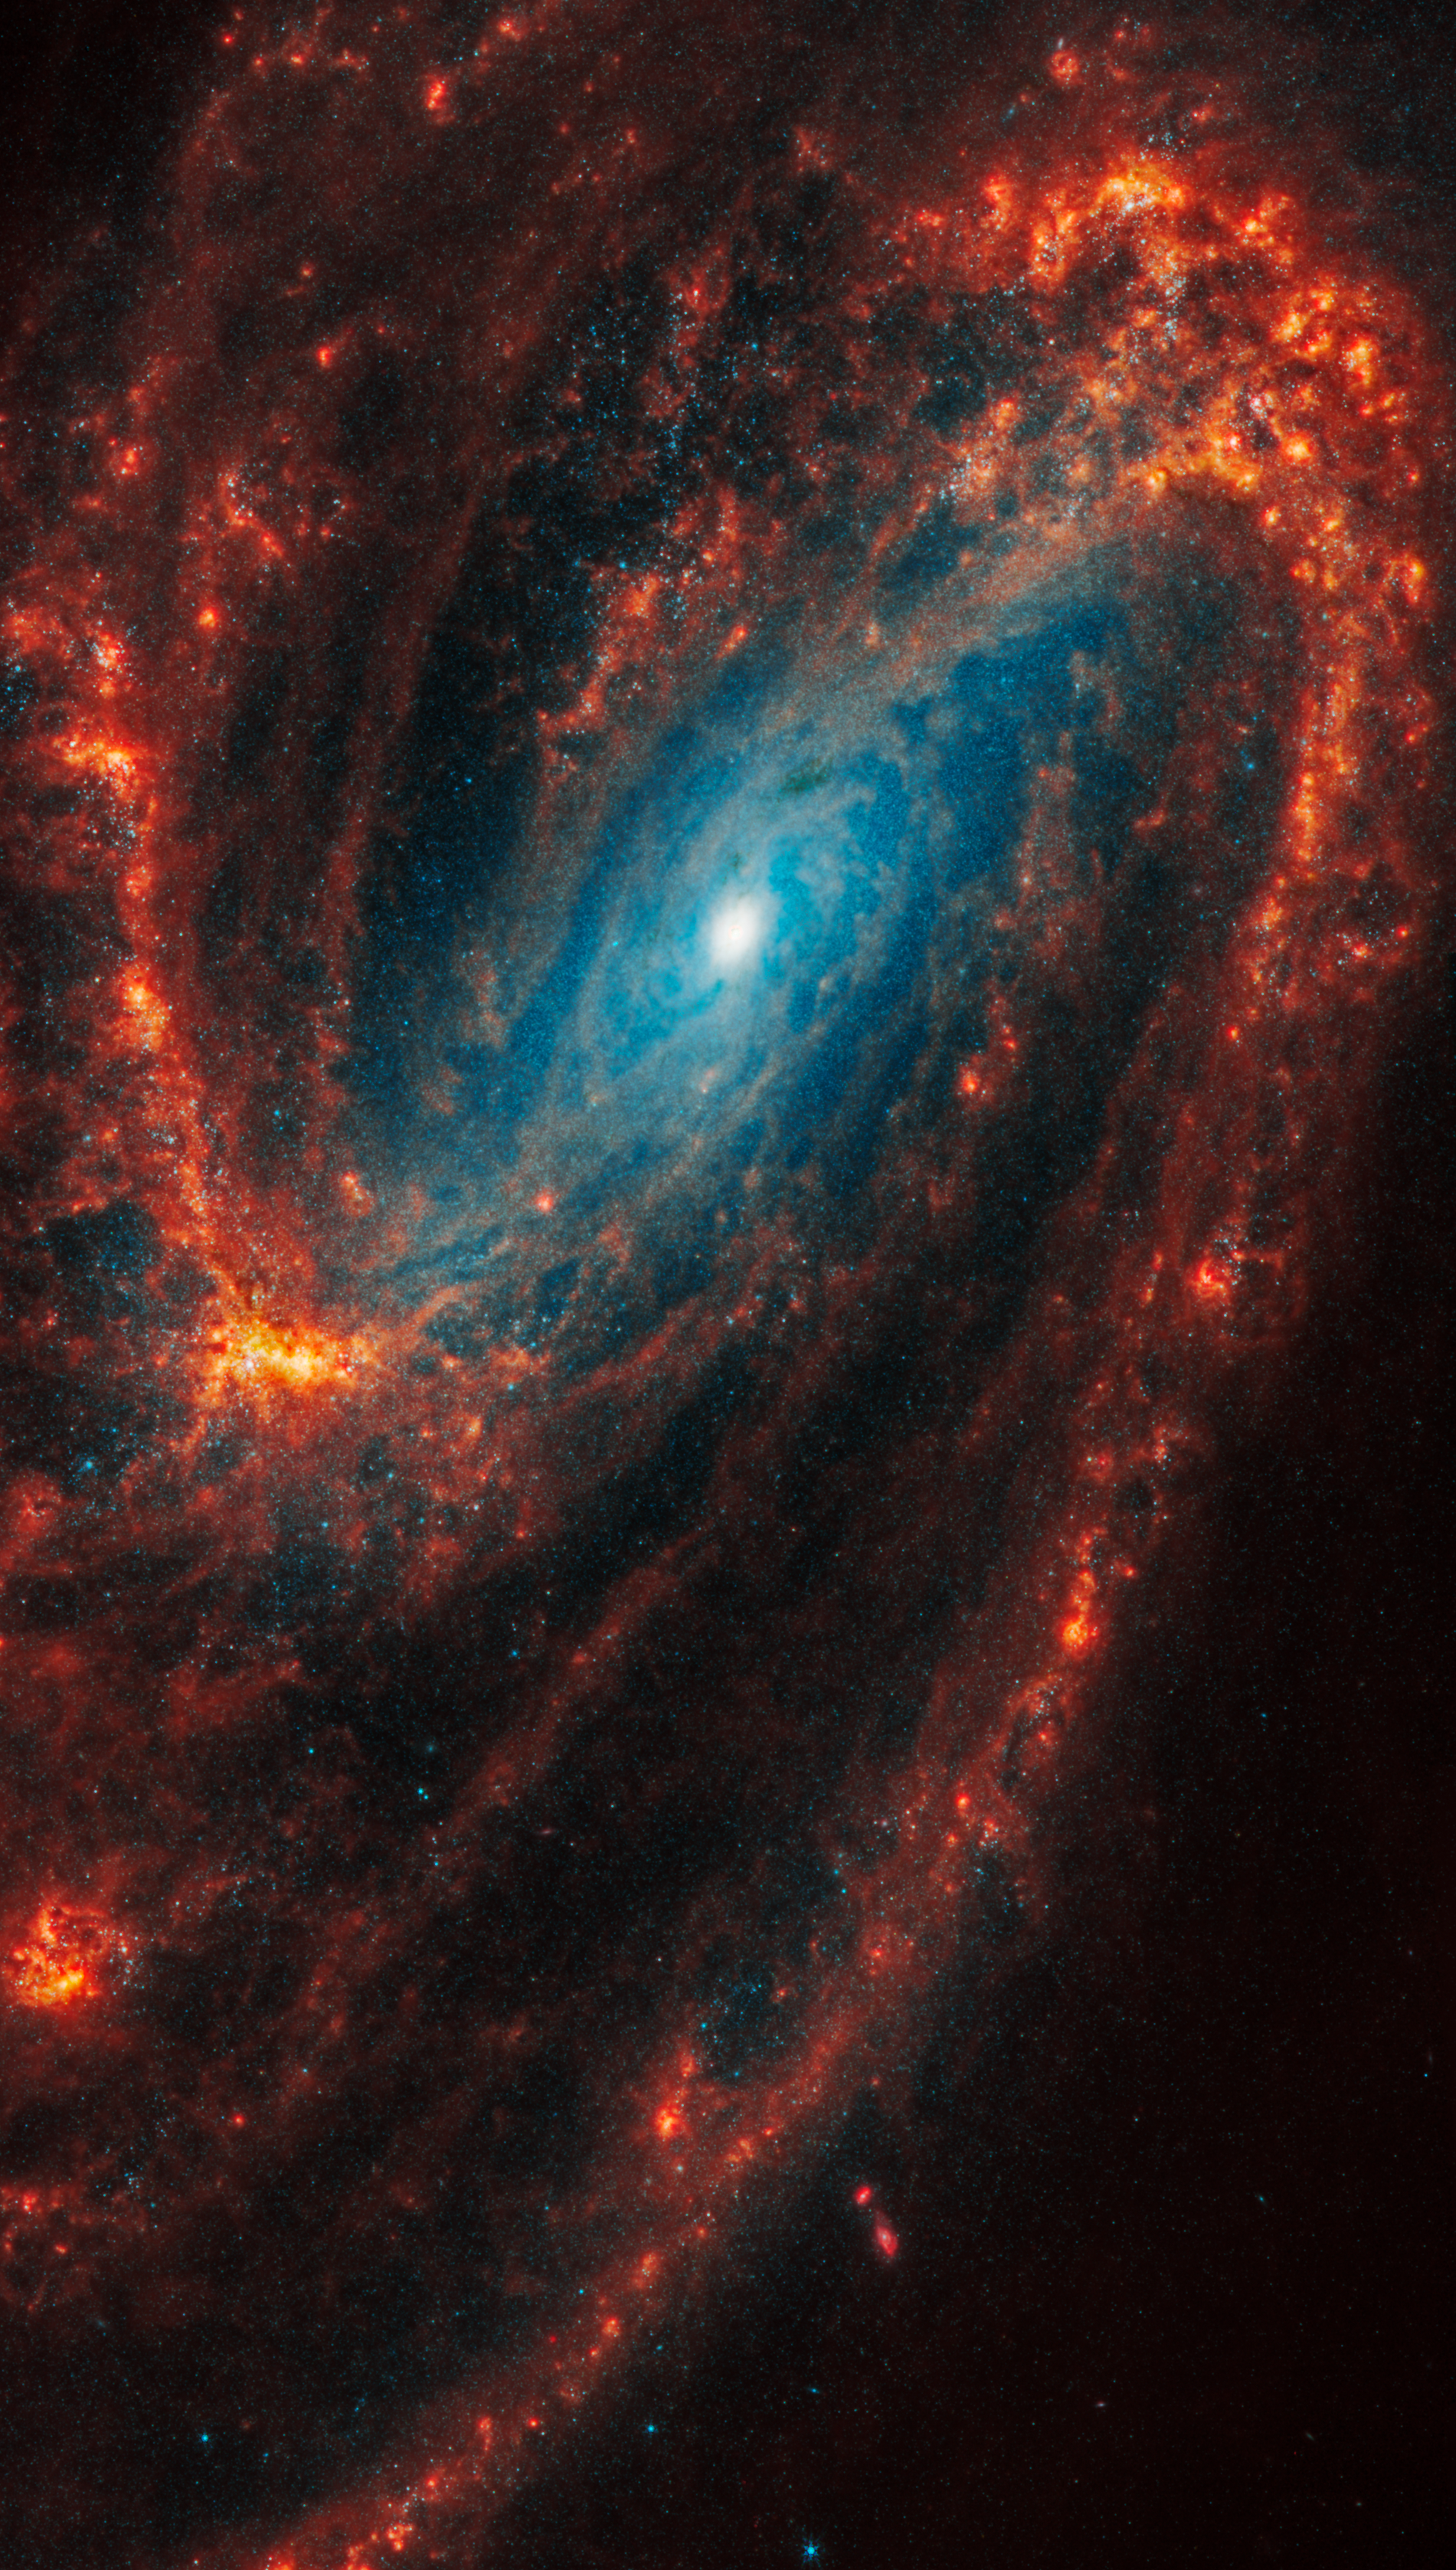 La Galassia NGC 3627, situata a 36 milioni di anni luce da noi, nella costellazione del Leone